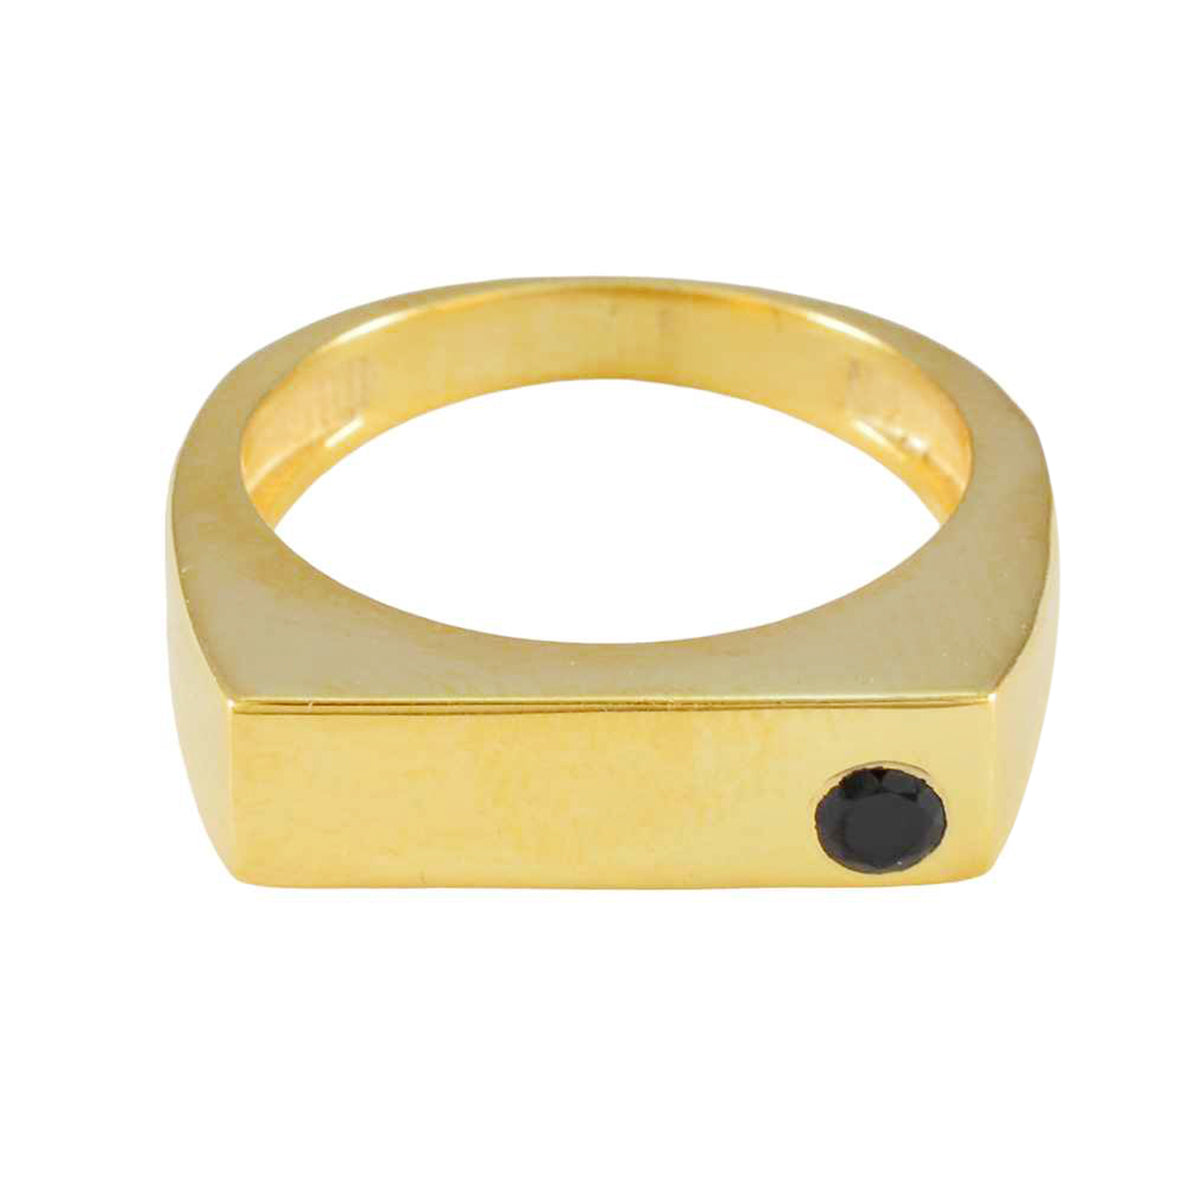 Riyo Perfekter Silberring mit Gelbgoldbeschichtung, blauer Saphirstein, runde Form, Lünettenfassung, stilvoller Schmuck, Black-Friday-Ring